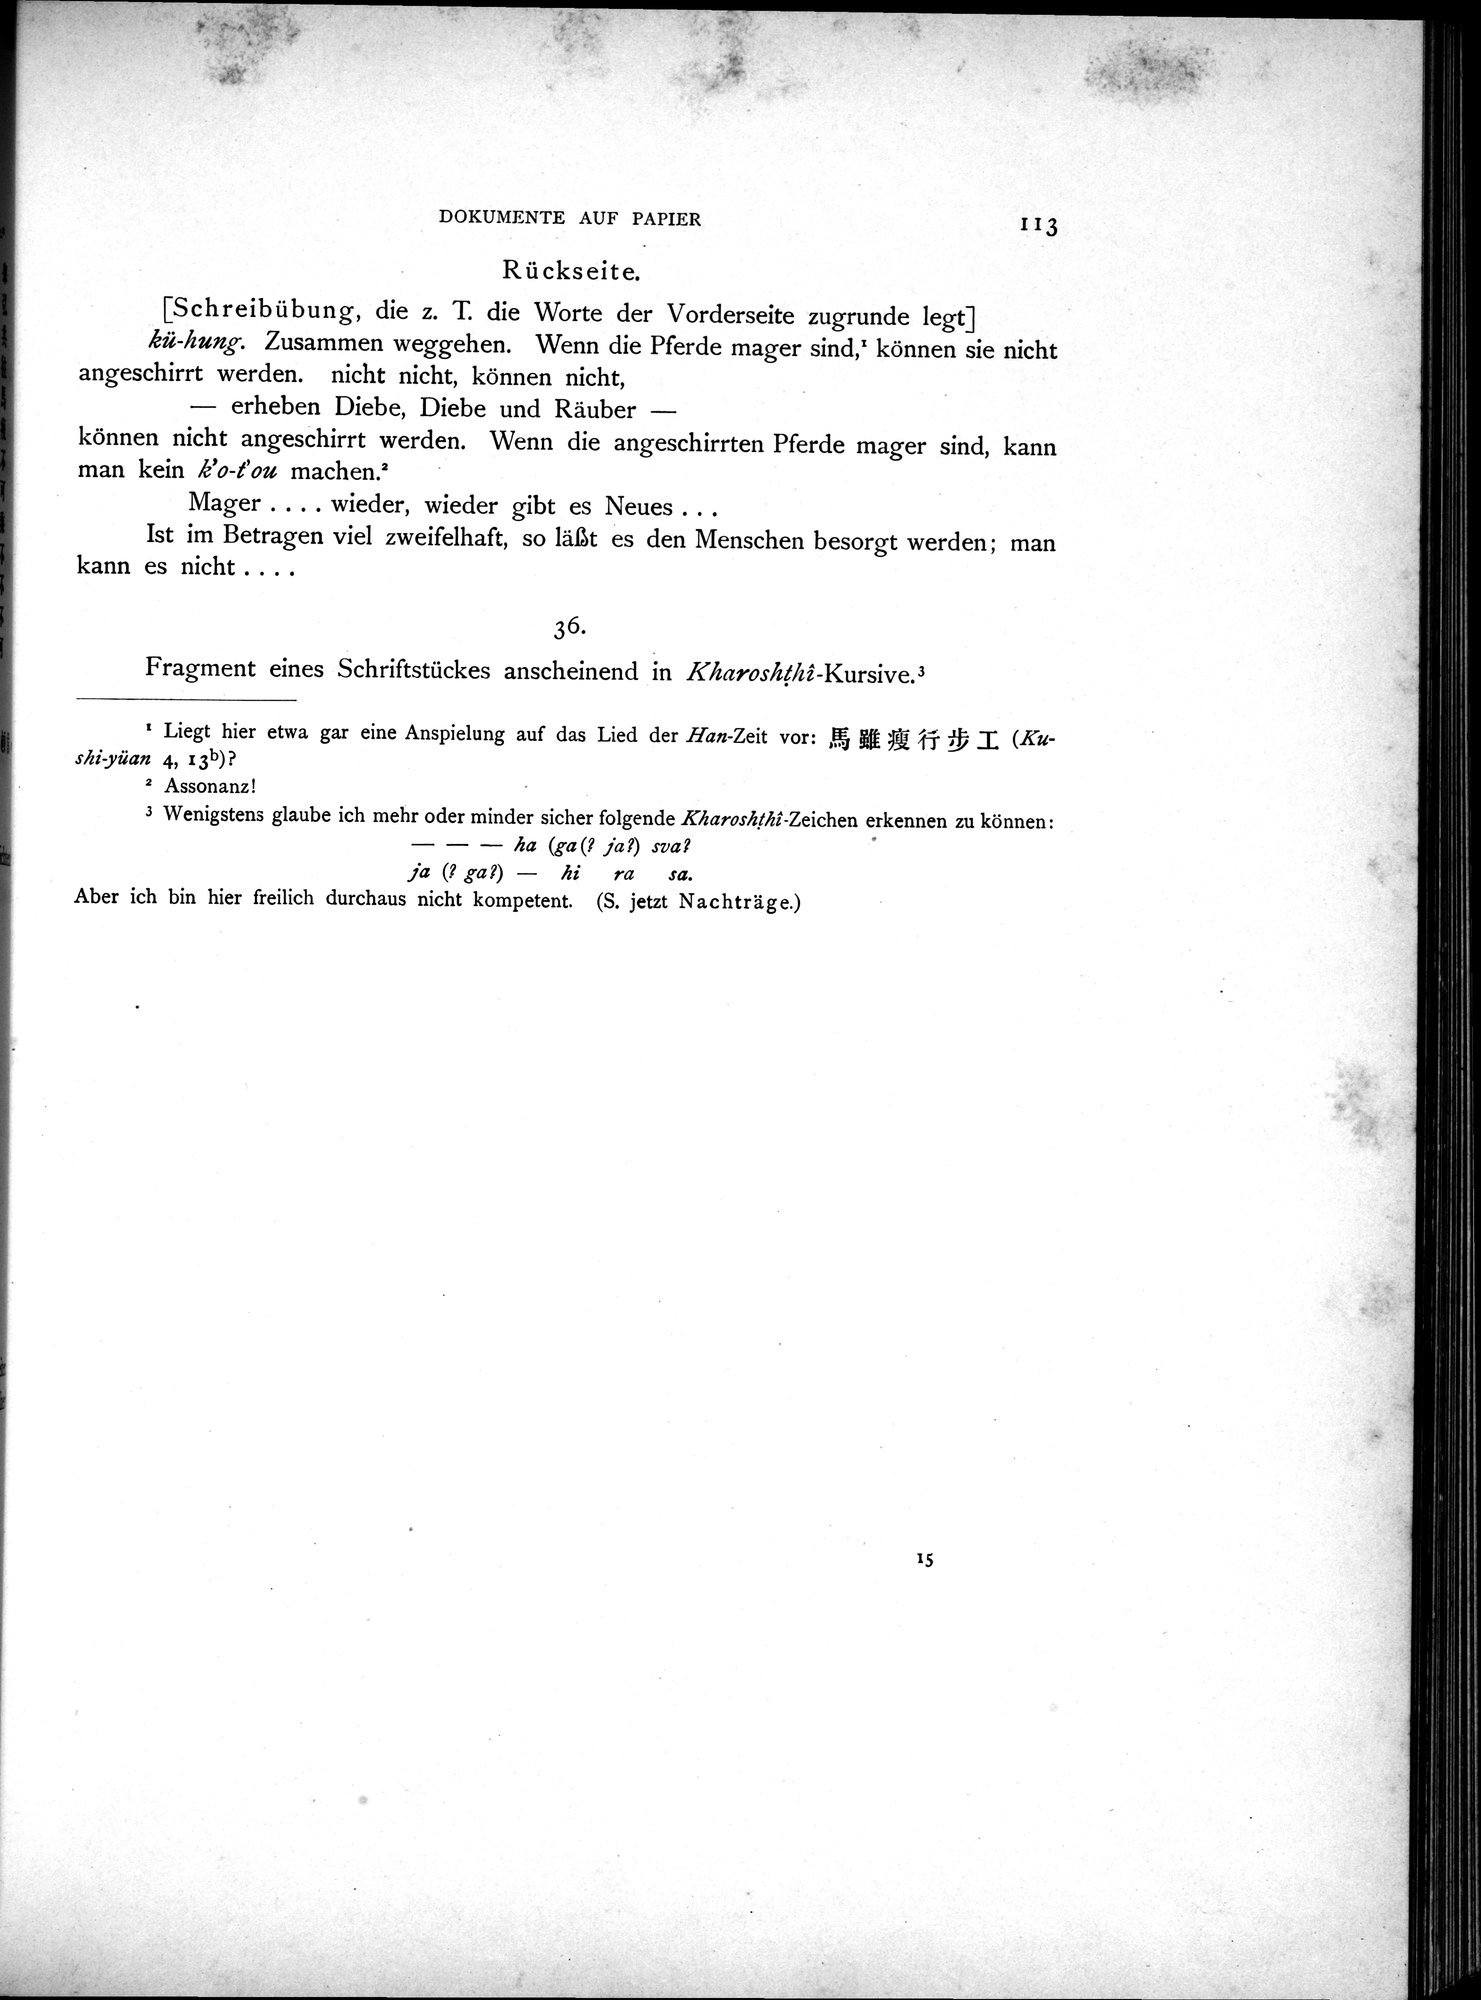 Die Chinesischen Handschriften- und sonstigen Kleinfunde Sven Hedins in Lou-lan : vol.1 / Page 137 (Grayscale High Resolution Image)